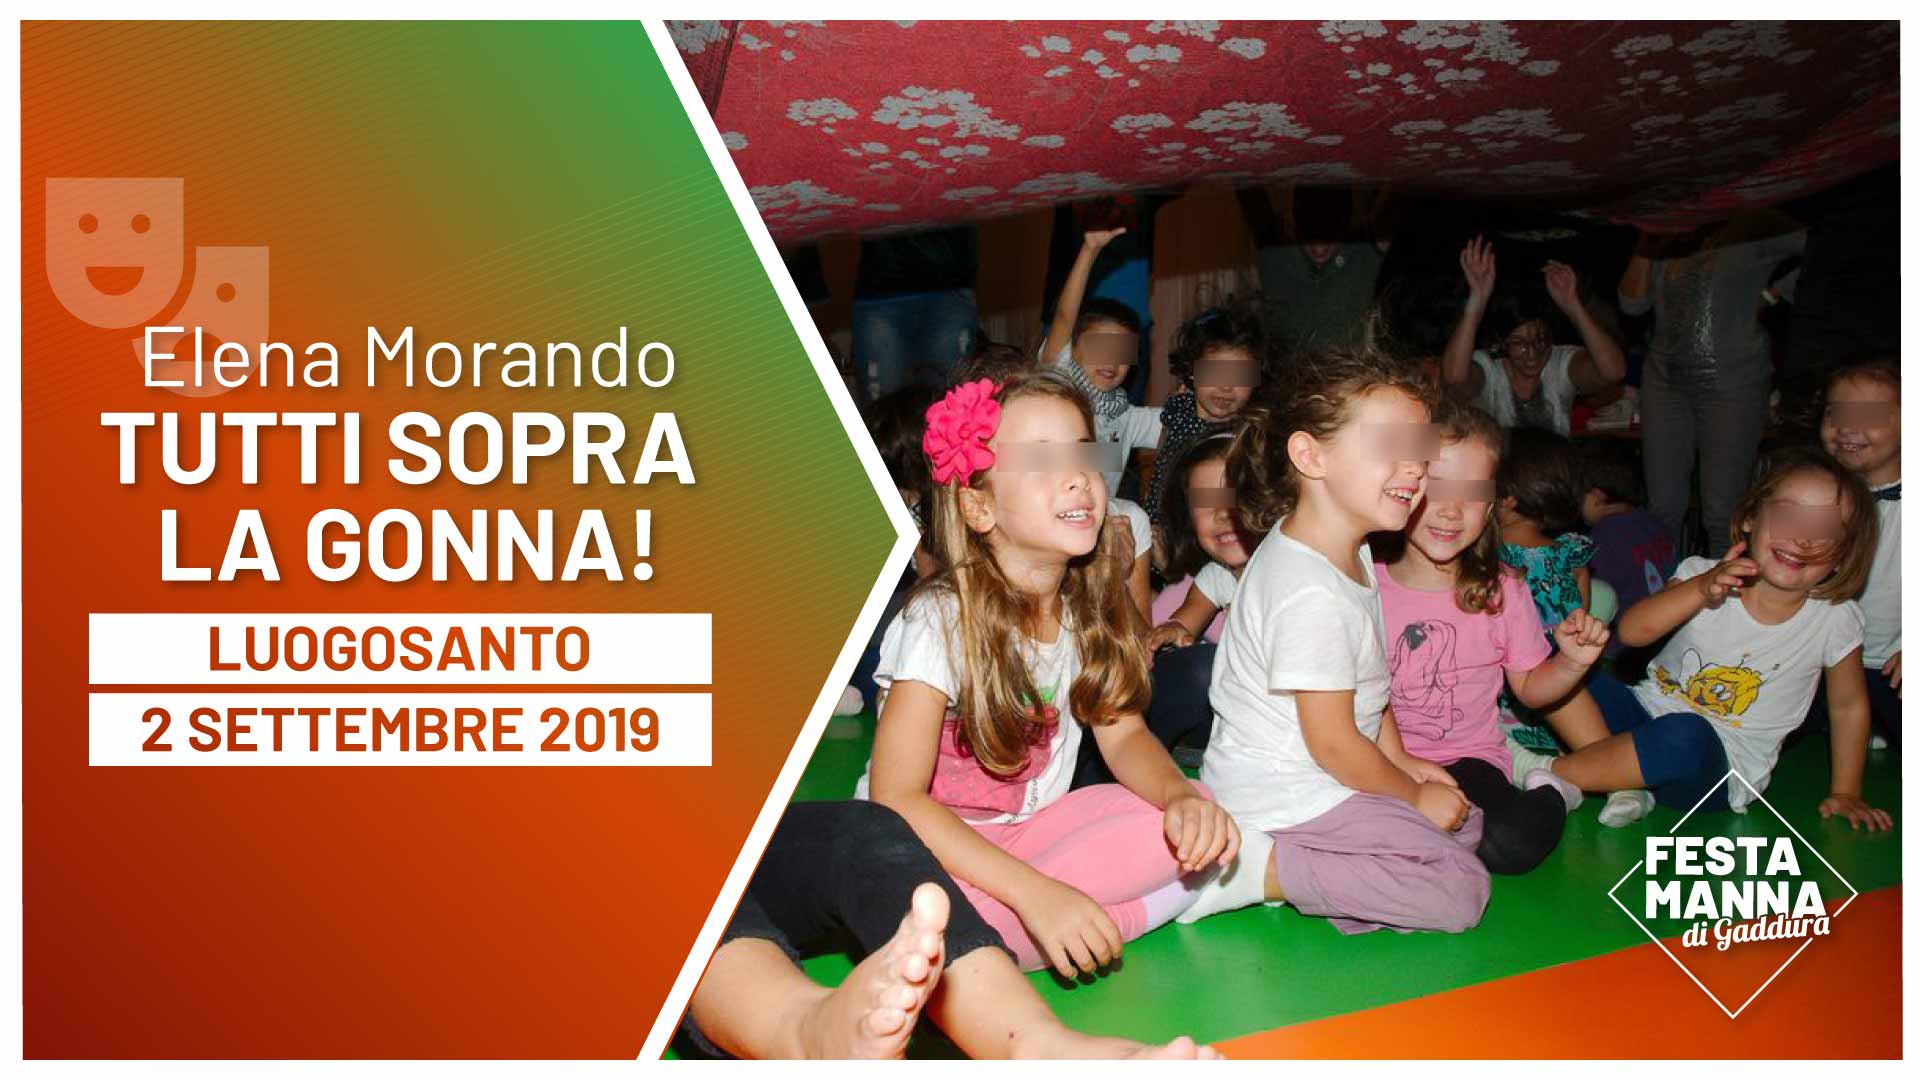 “Tutti sopra la gonna!”, readings for children by Elena Morando | Festa Manna di Gaddura 2019